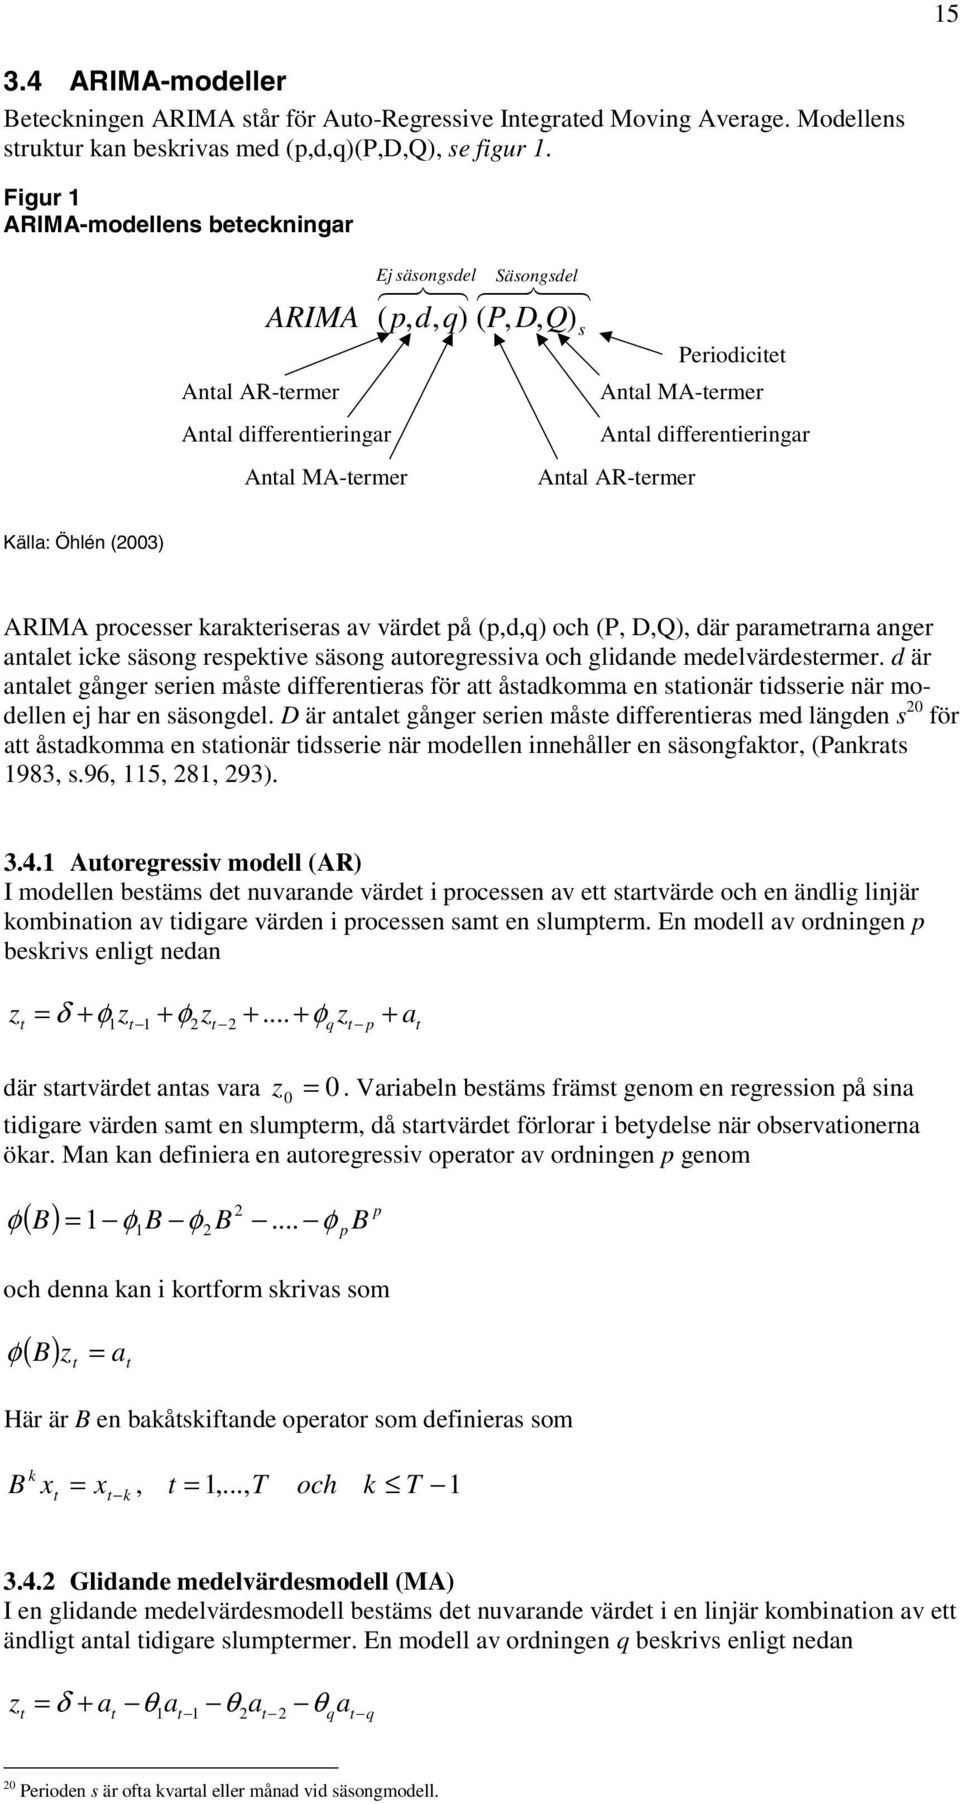 Anal AR-ermer Källa: Öhlén (2003) ARIMA processer karakeriseras av värde på (p,d,q) och (P, D,Q), där paramerarna anger anale icke säsong respekive säsong auoregressiva och glidande medelvärdesermer.